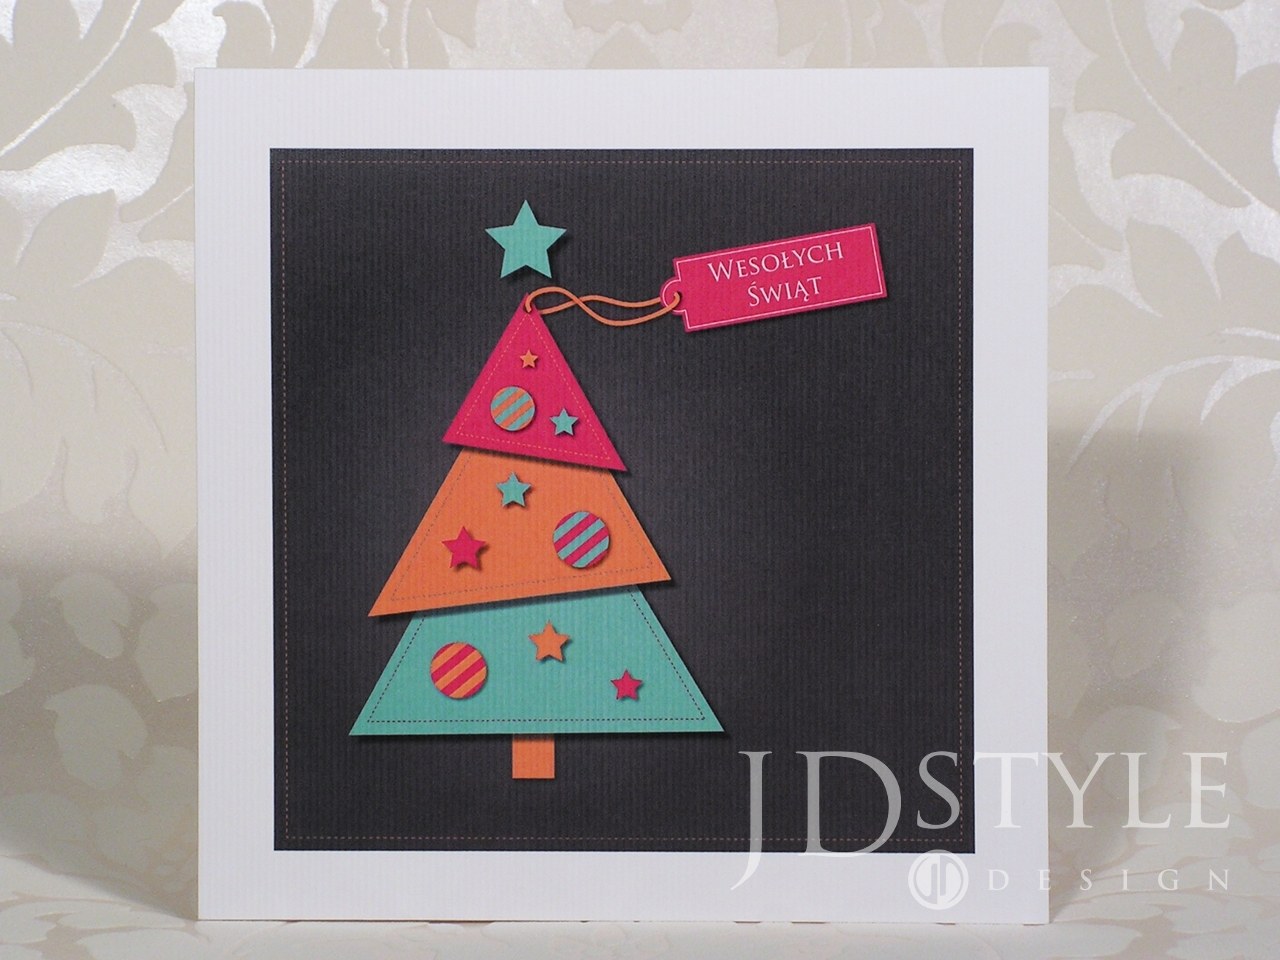 Kartki świąteczne dla firm z choinką, druk logo i koperta gratis, faktura VAT BN-58